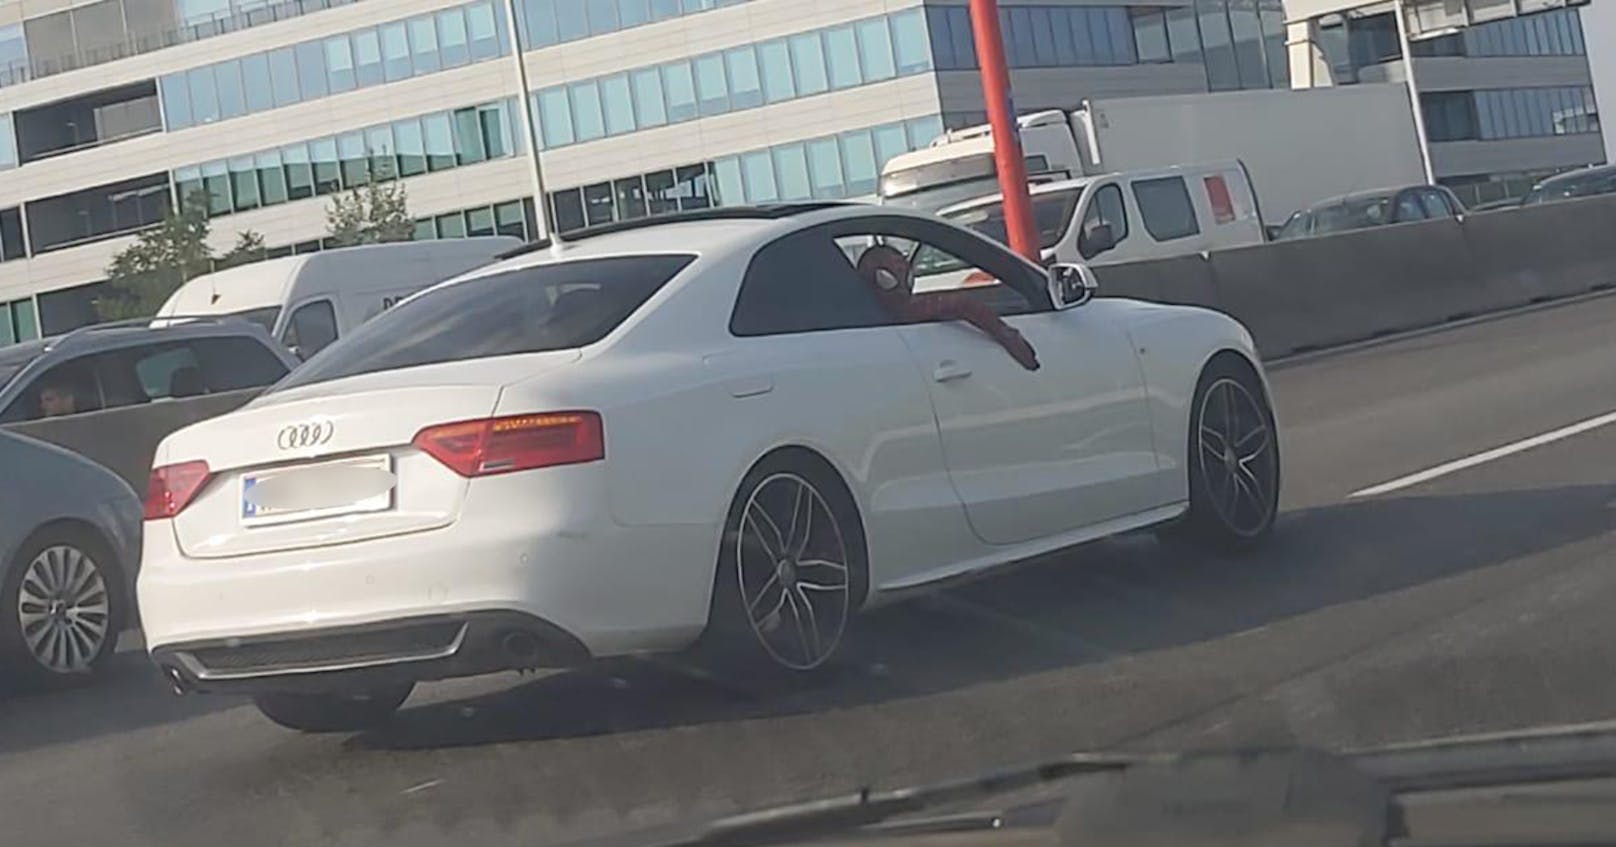 Dieser Superheld war am Mittwoch im weißen Audi unterwegs